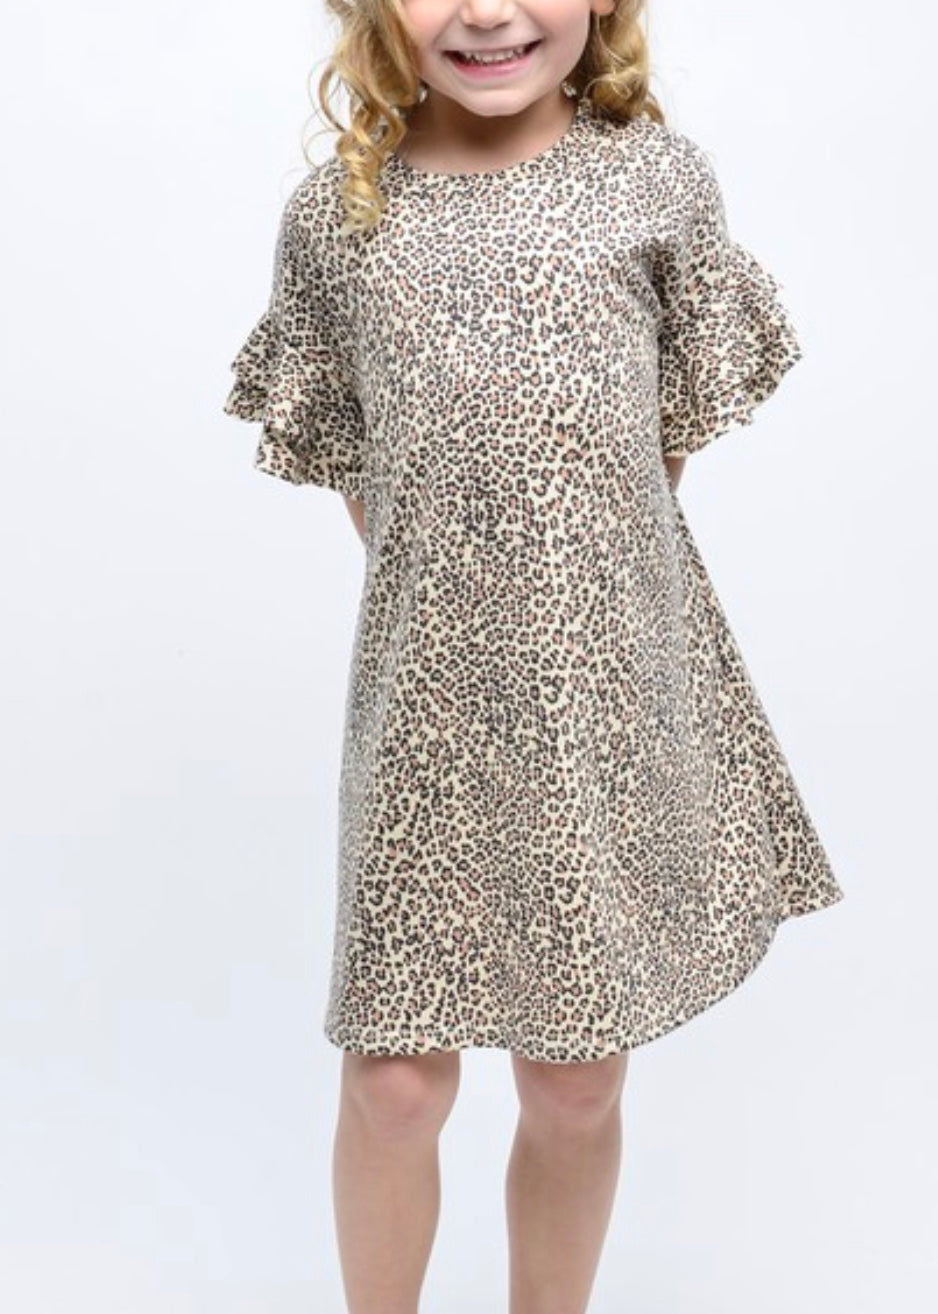 Girls leopard ruffled short sleeve dress